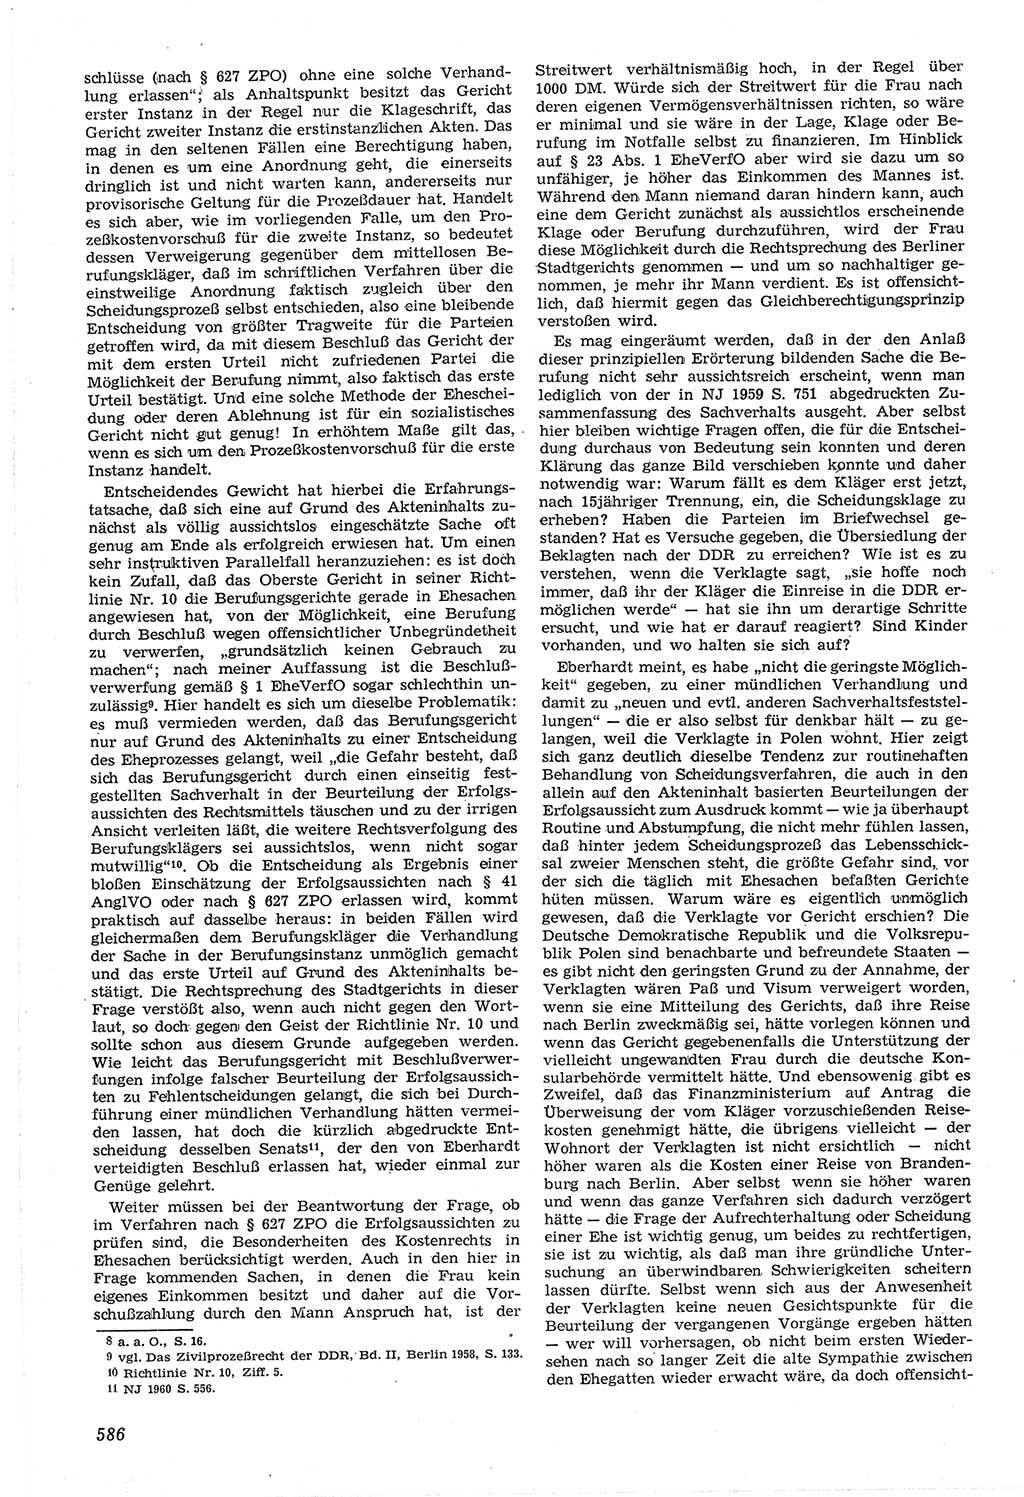 Neue Justiz (NJ), Zeitschrift für Recht und Rechtswissenschaft [Deutsche Demokratische Republik (DDR)], 14. Jahrgang 1960, Seite 586 (NJ DDR 1960, S. 586)